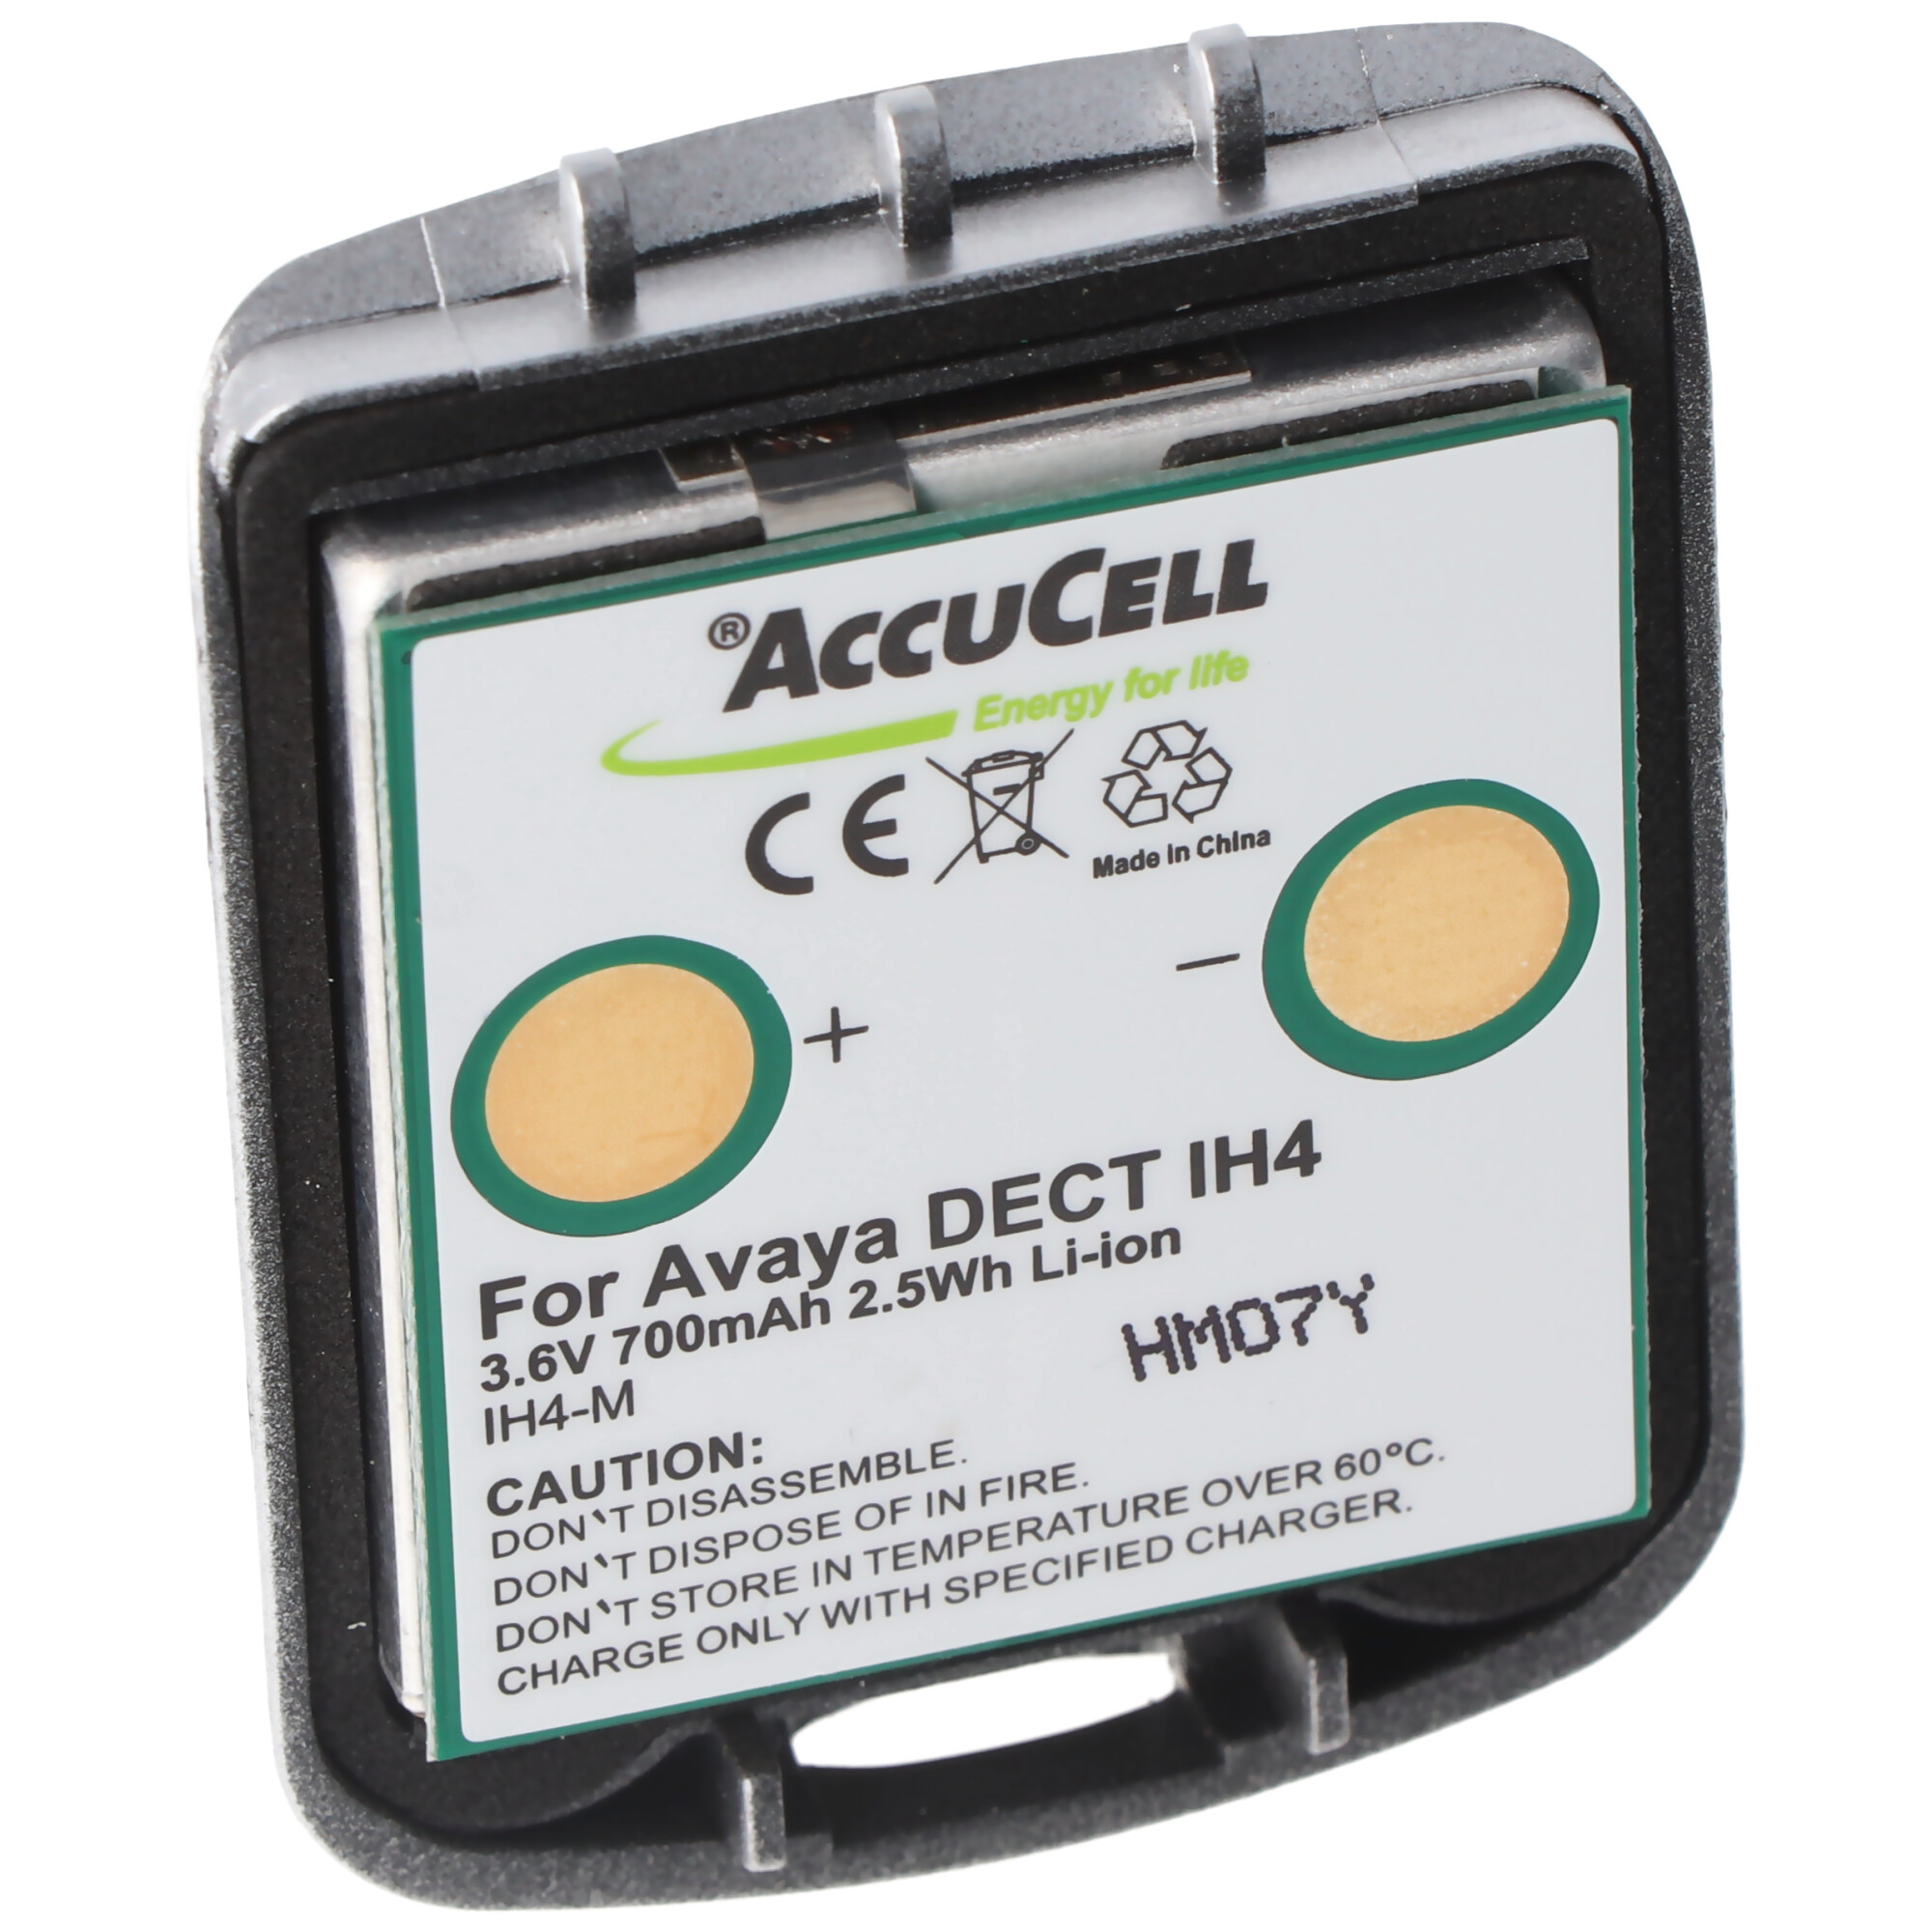 AccuCell Akku passend für den Avaya DECT IH4 Li-Ion Akku 4.999.130.768 mit Gehäuse 3,6V 700mAh, Funkwerk DECT D4, DECT FC4